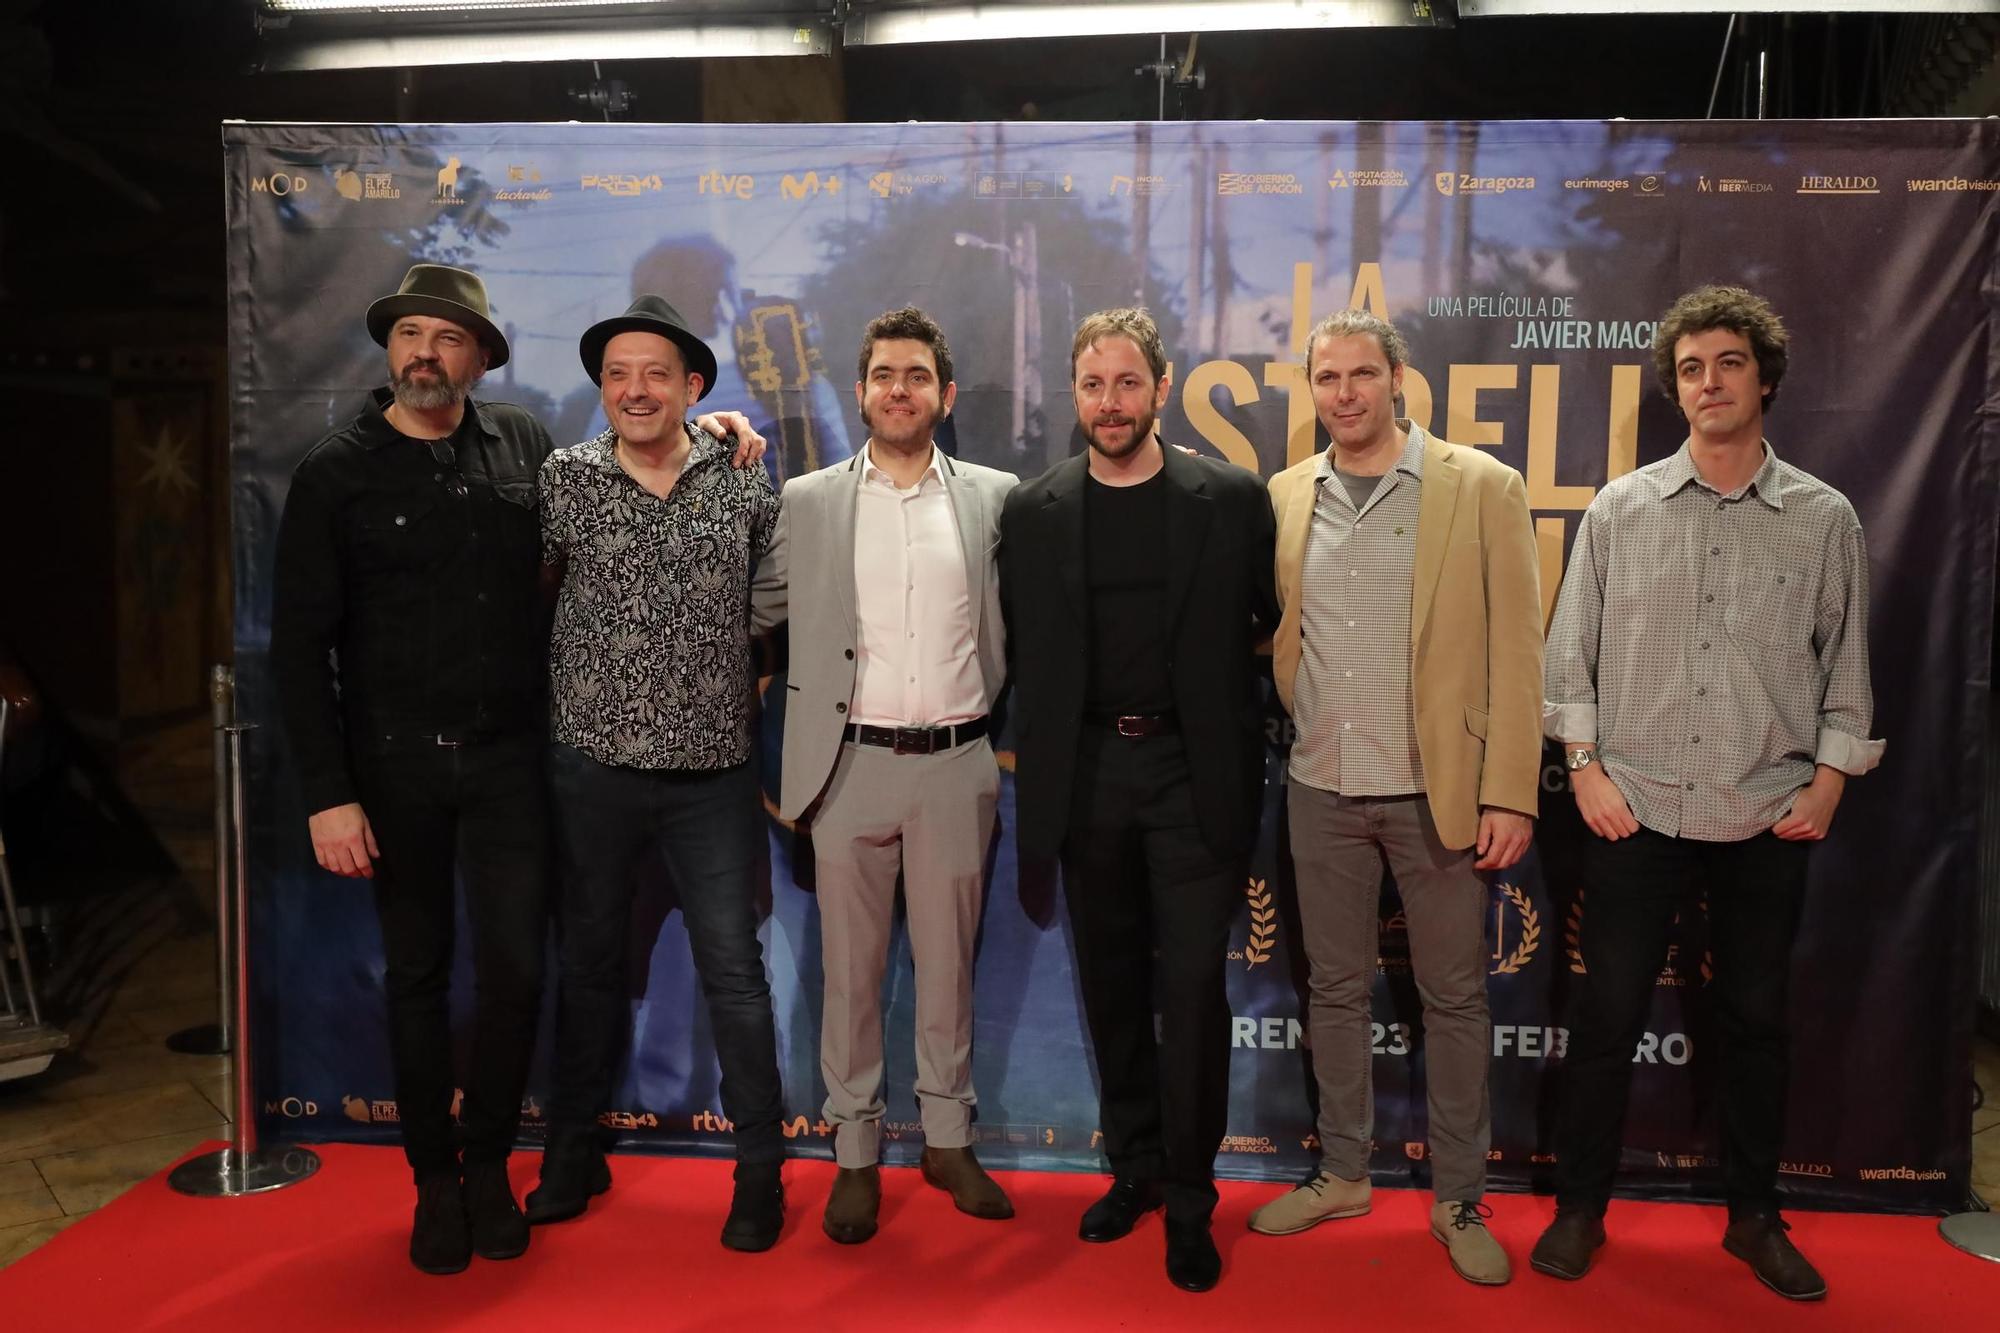 En imágenes | Preestreno de 'La Estrella Azul' en los cines Palafox de Zaragoza